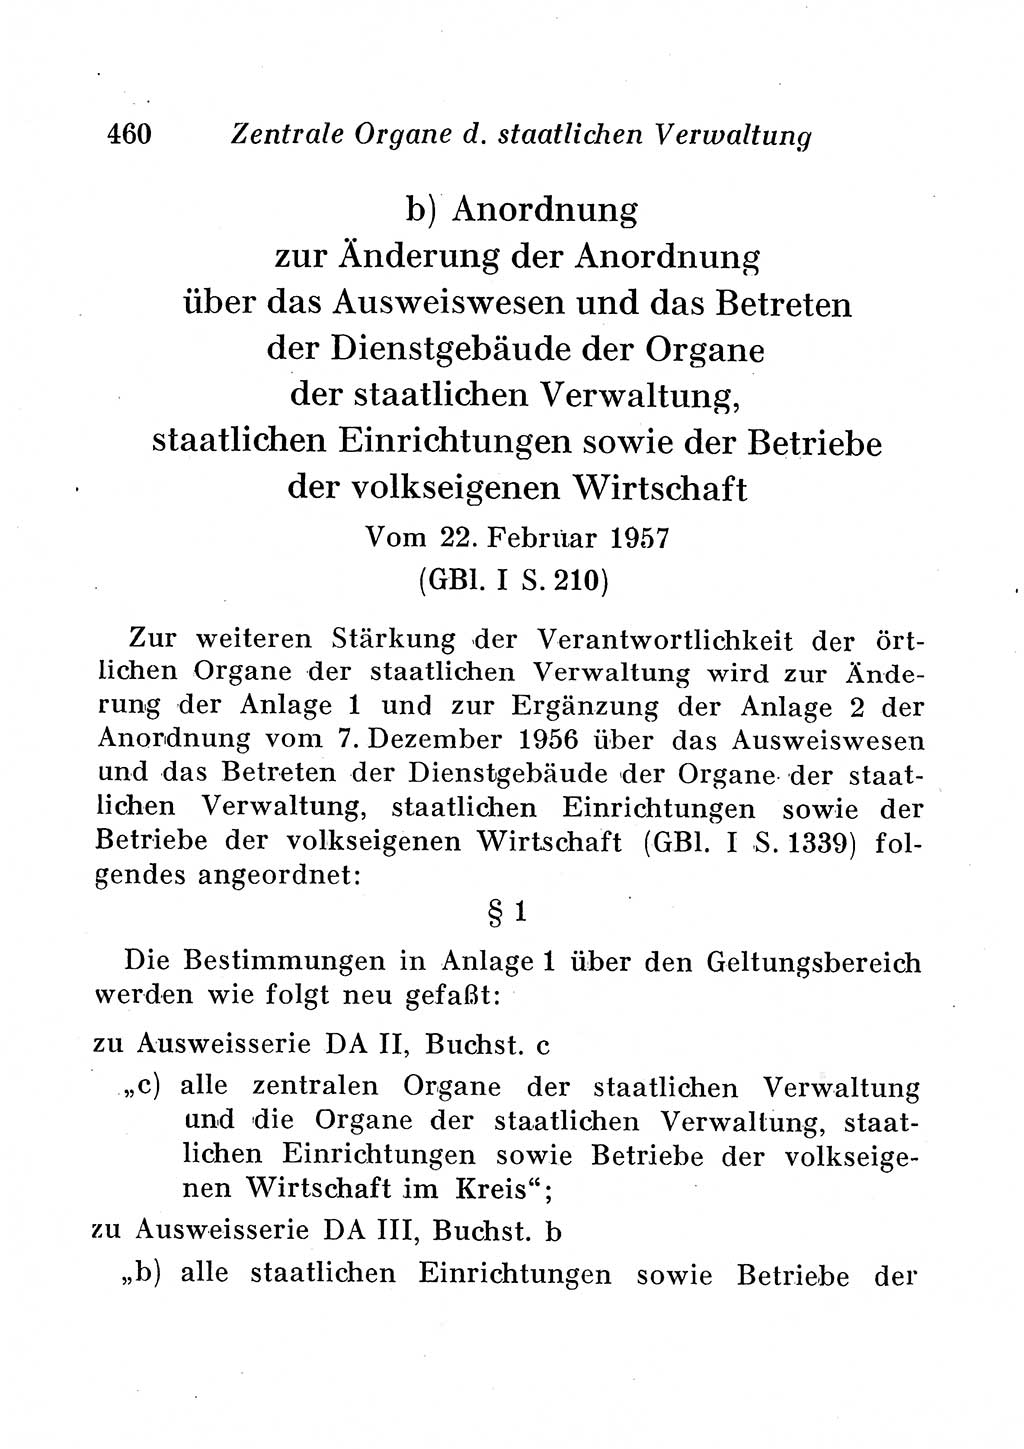 Staats- und verwaltungsrechtliche Gesetze der Deutschen Demokratischen Republik (DDR) 1958, Seite 460 (StVerwR Ges. DDR 1958, S. 460)